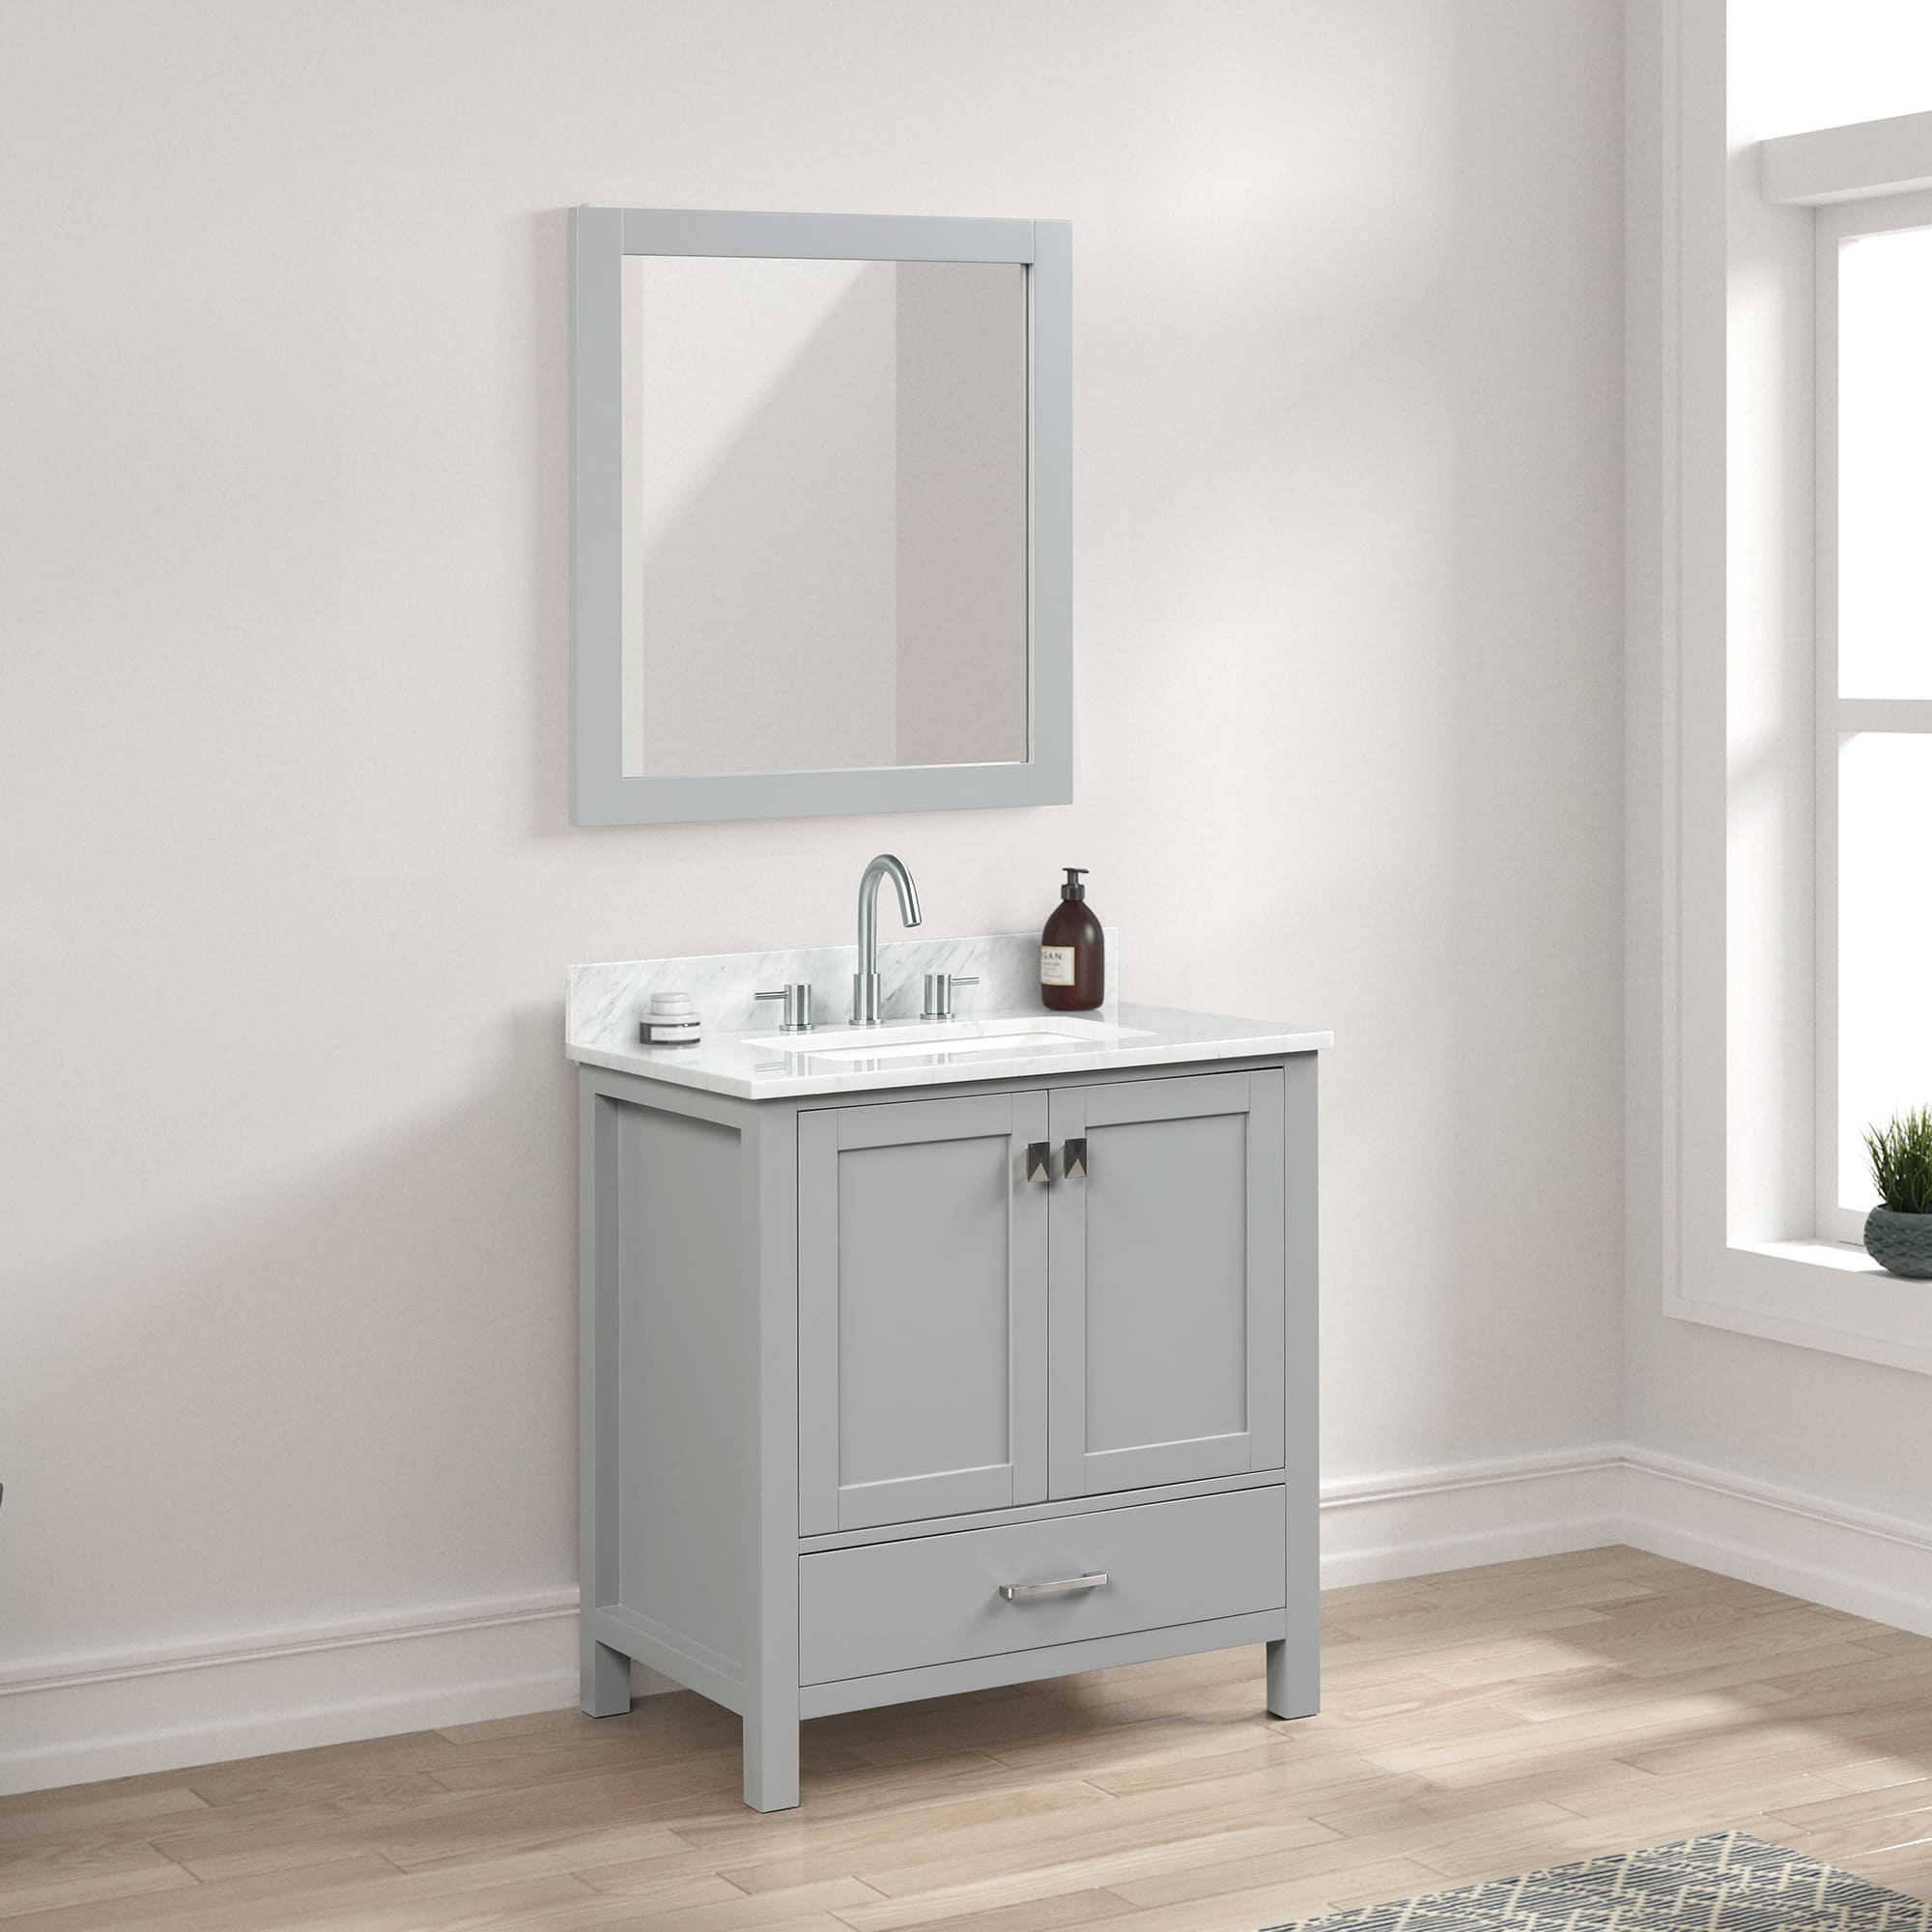 Geneva 30" Bathroom Vanity  #size_30"  #color_metal grey